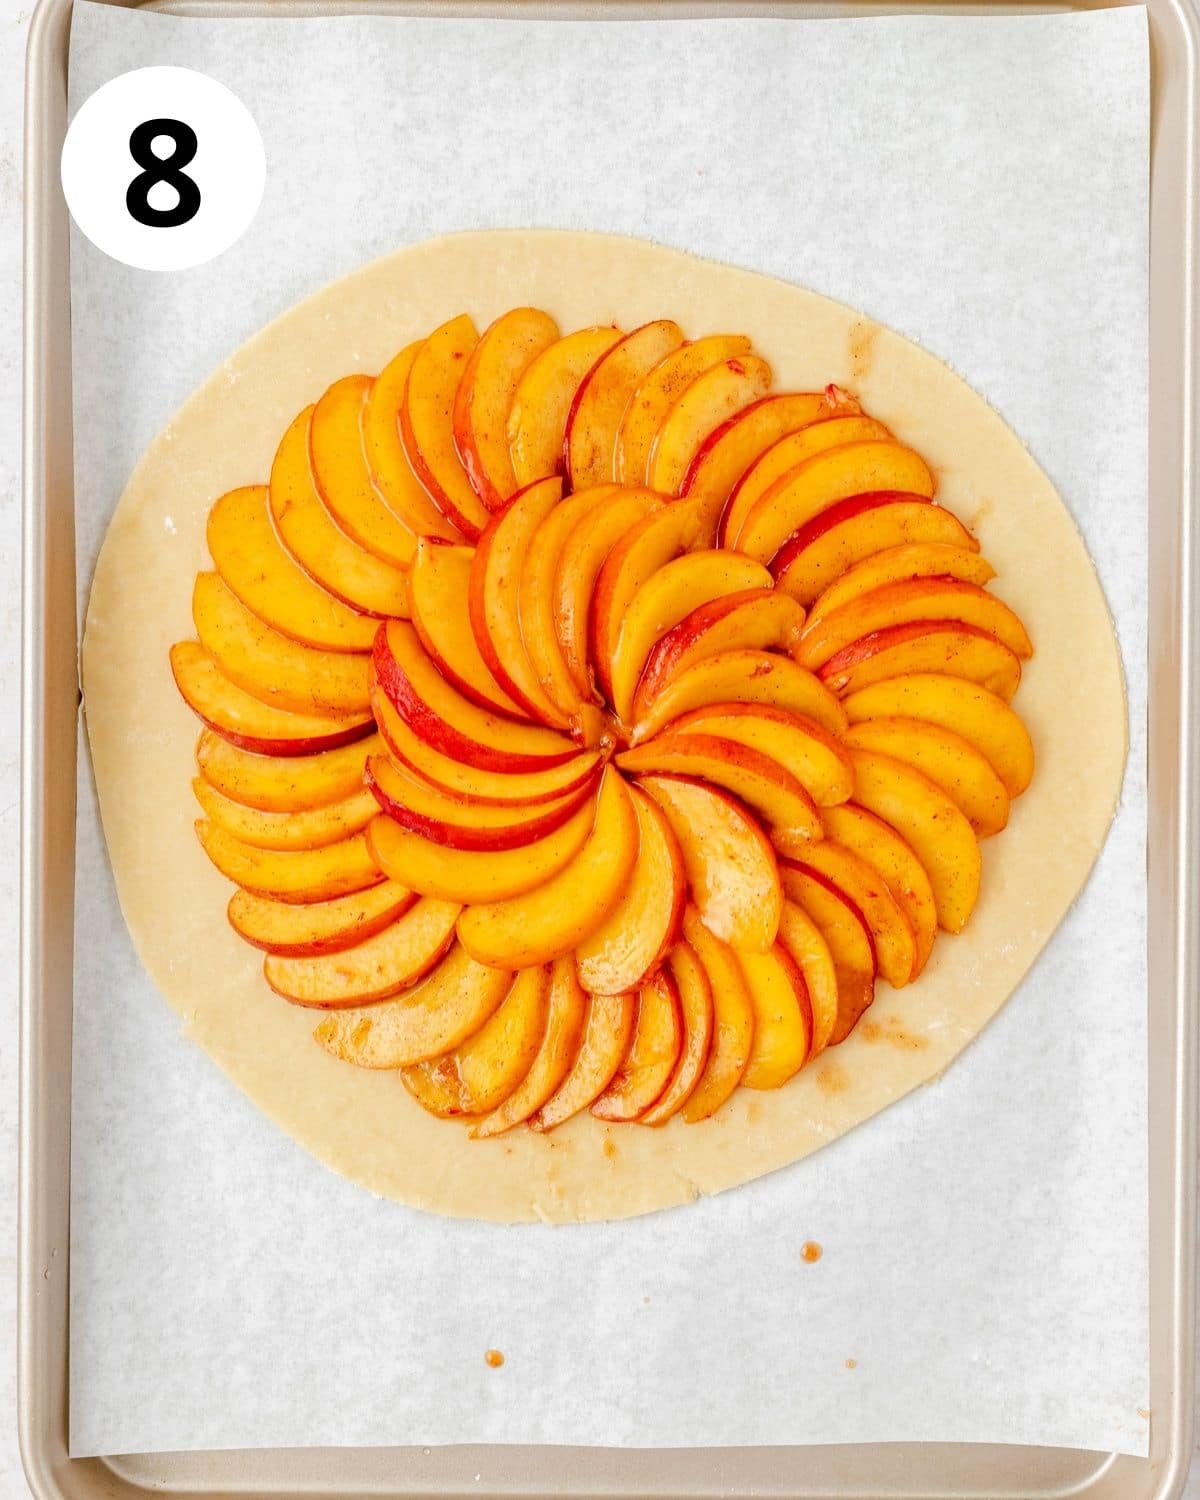 spiced peaches arranged on pie dough